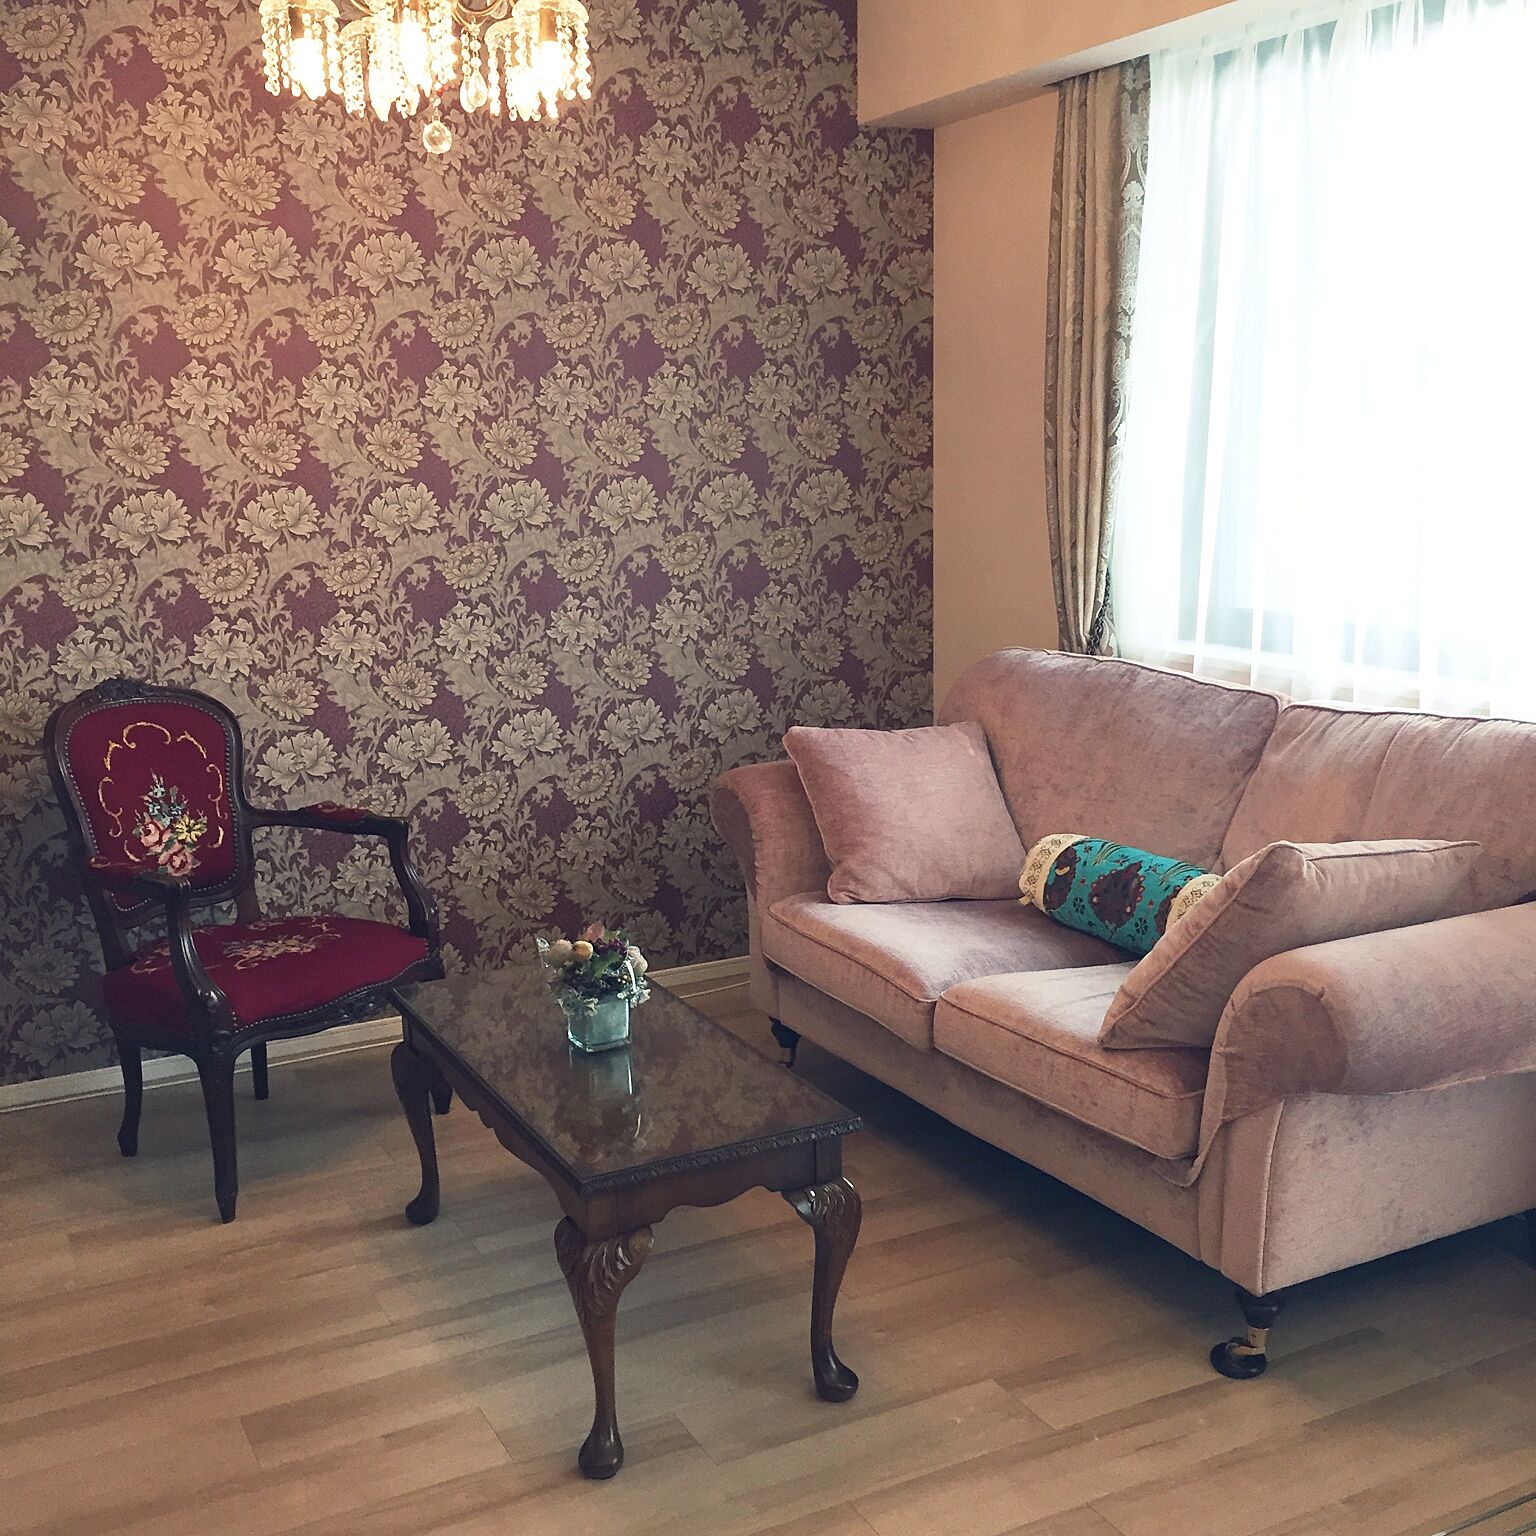 イギリスではおしゃれな柄の壁紙も人気です。ヴィクトリアン調の家具と合わせたパープルの洗練されたコーディネートは参考になりますね。